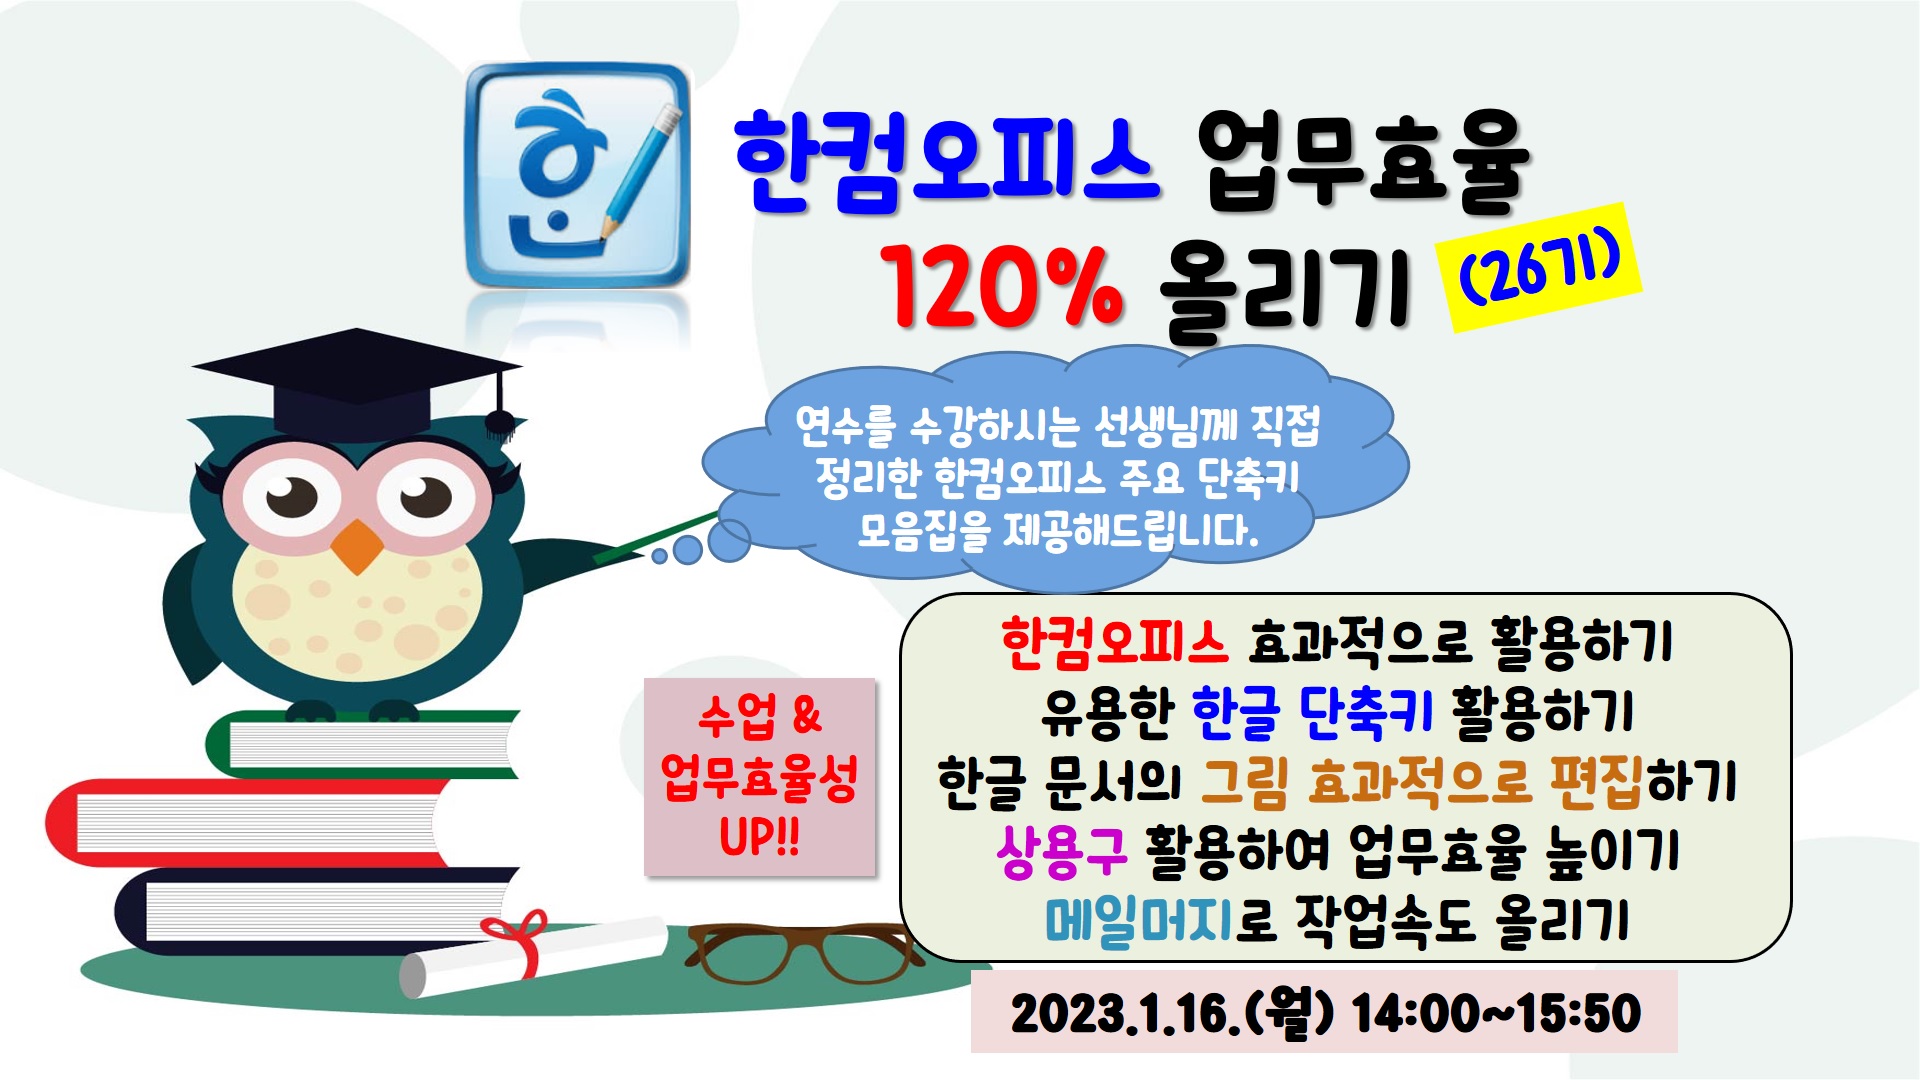 한컴오피스 업무효율 120% 올리기(26기)